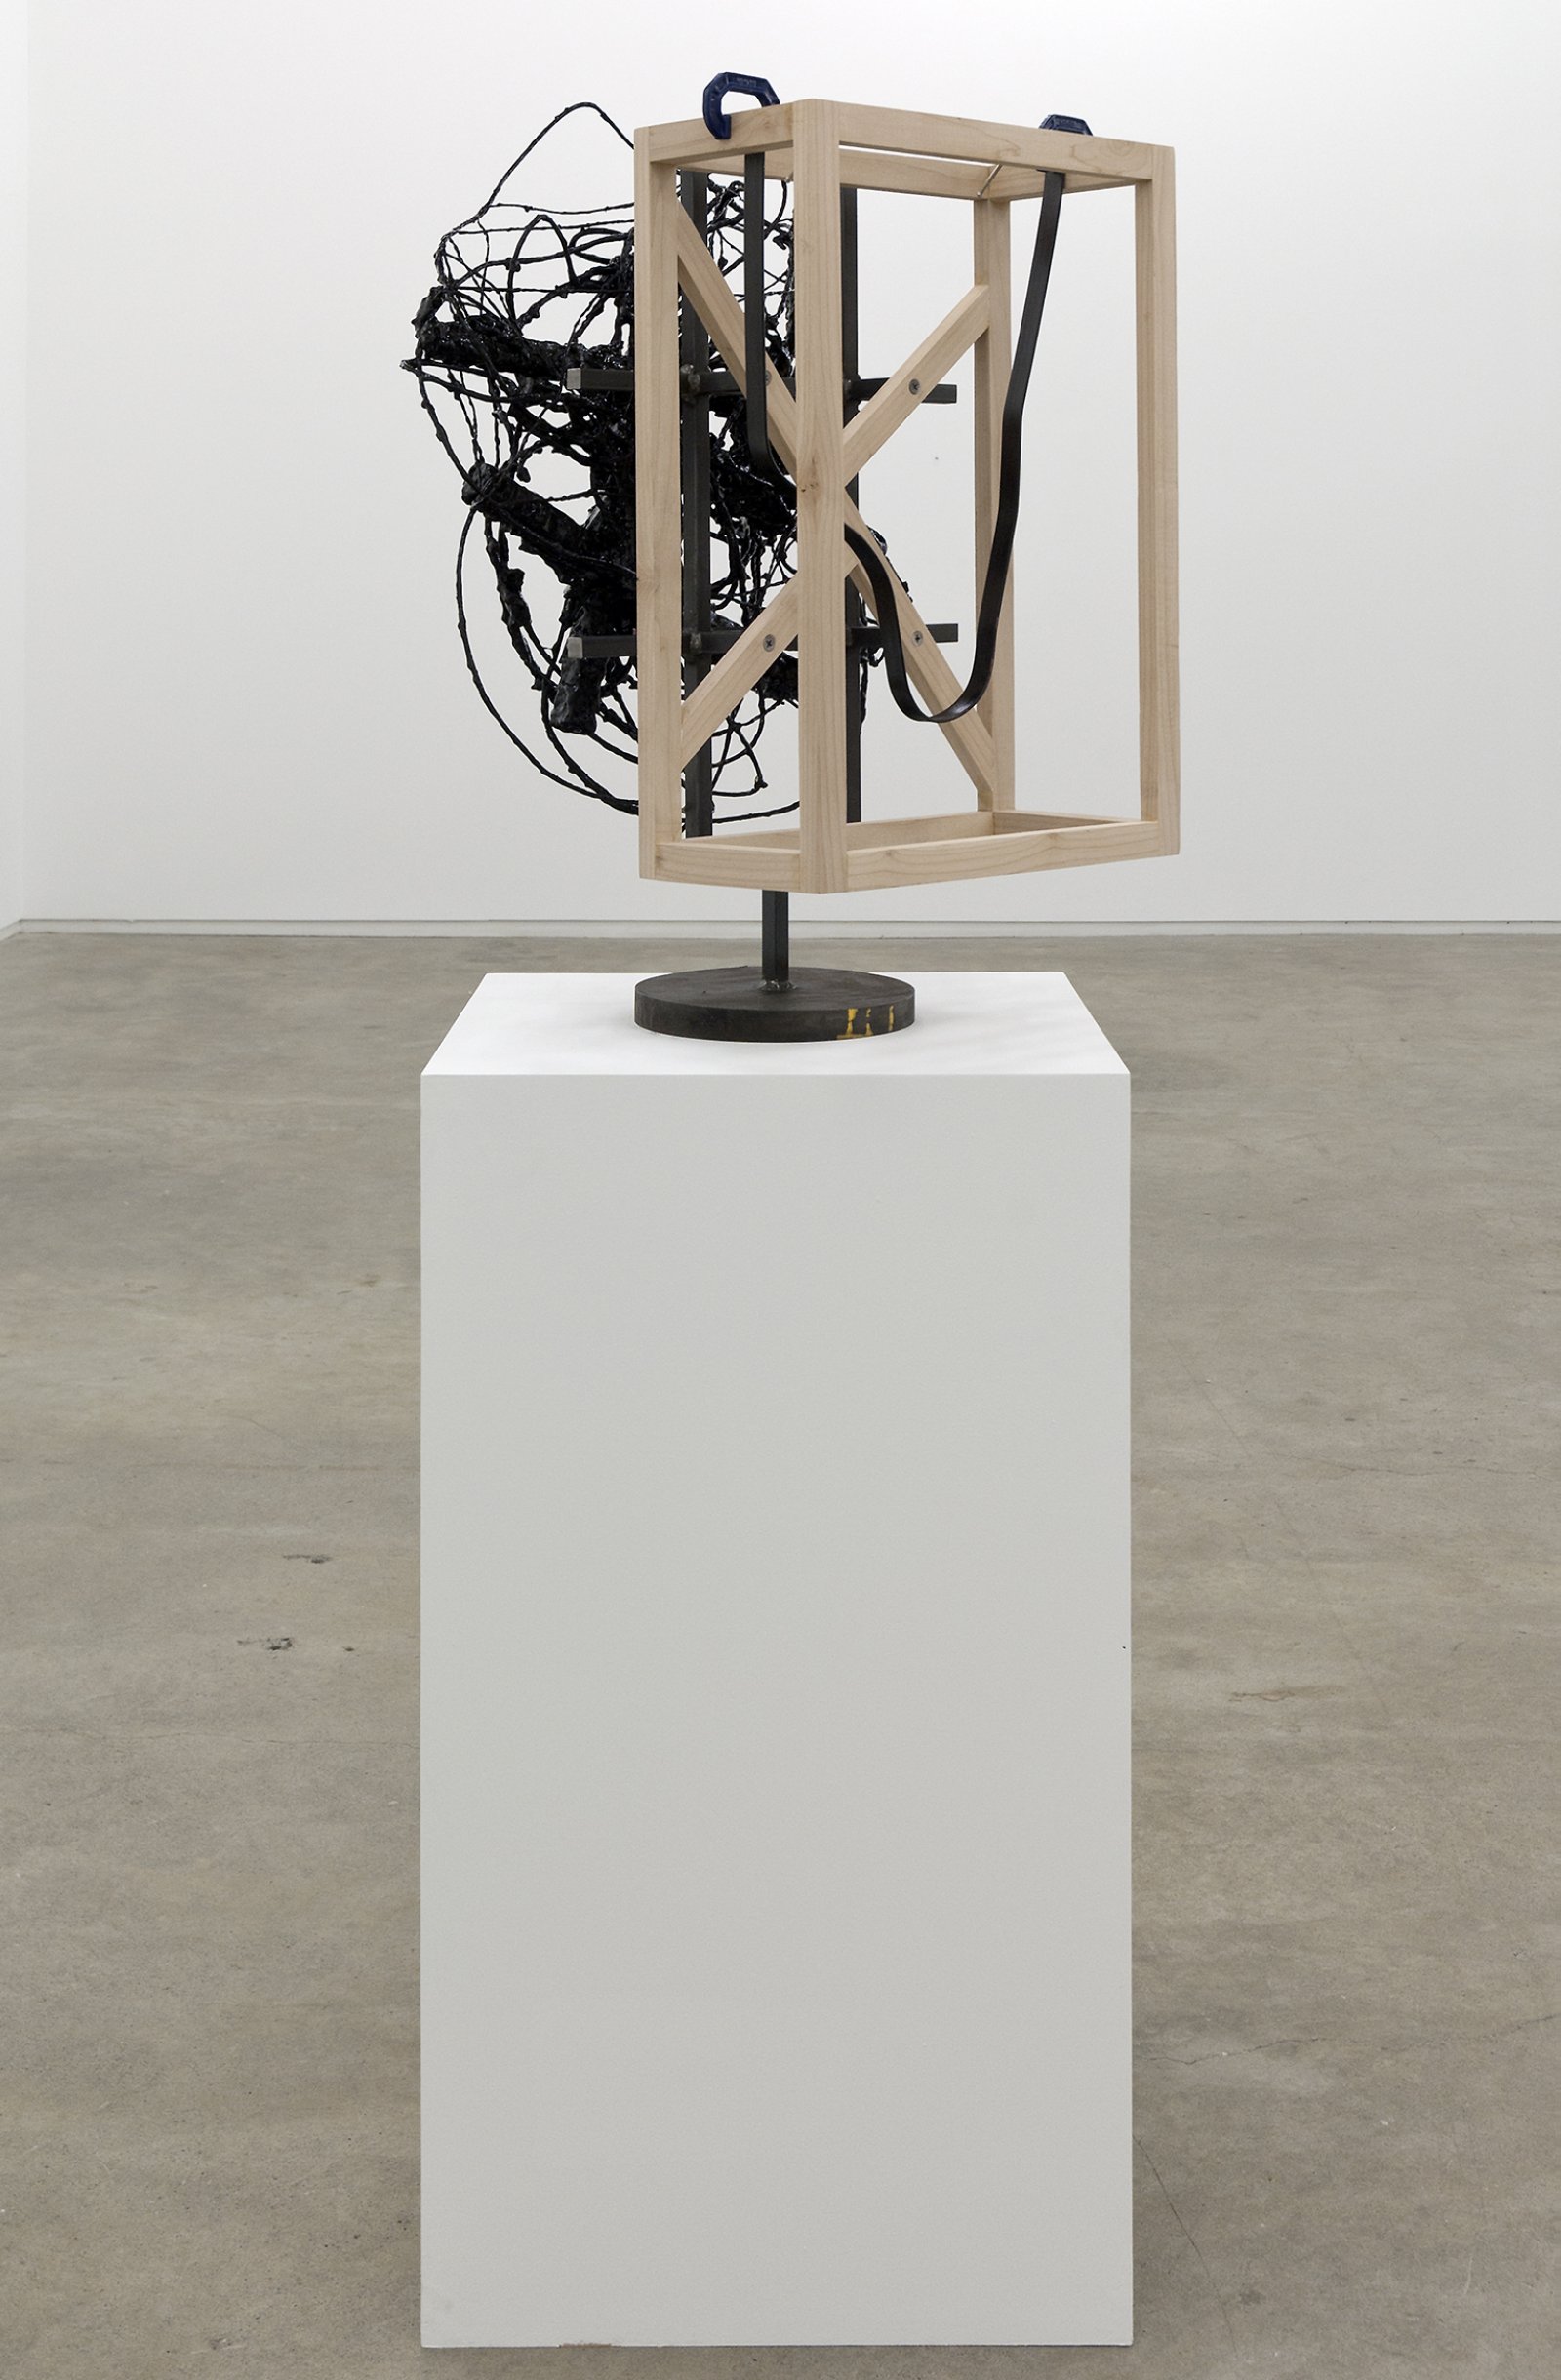 Damian Moppett, Untitled, 2010, steel, wood, wire, plaster, enamel, clamps, 27 x 18 x 18 in. (69 x 46 x 44 cm) by Damian Moppett